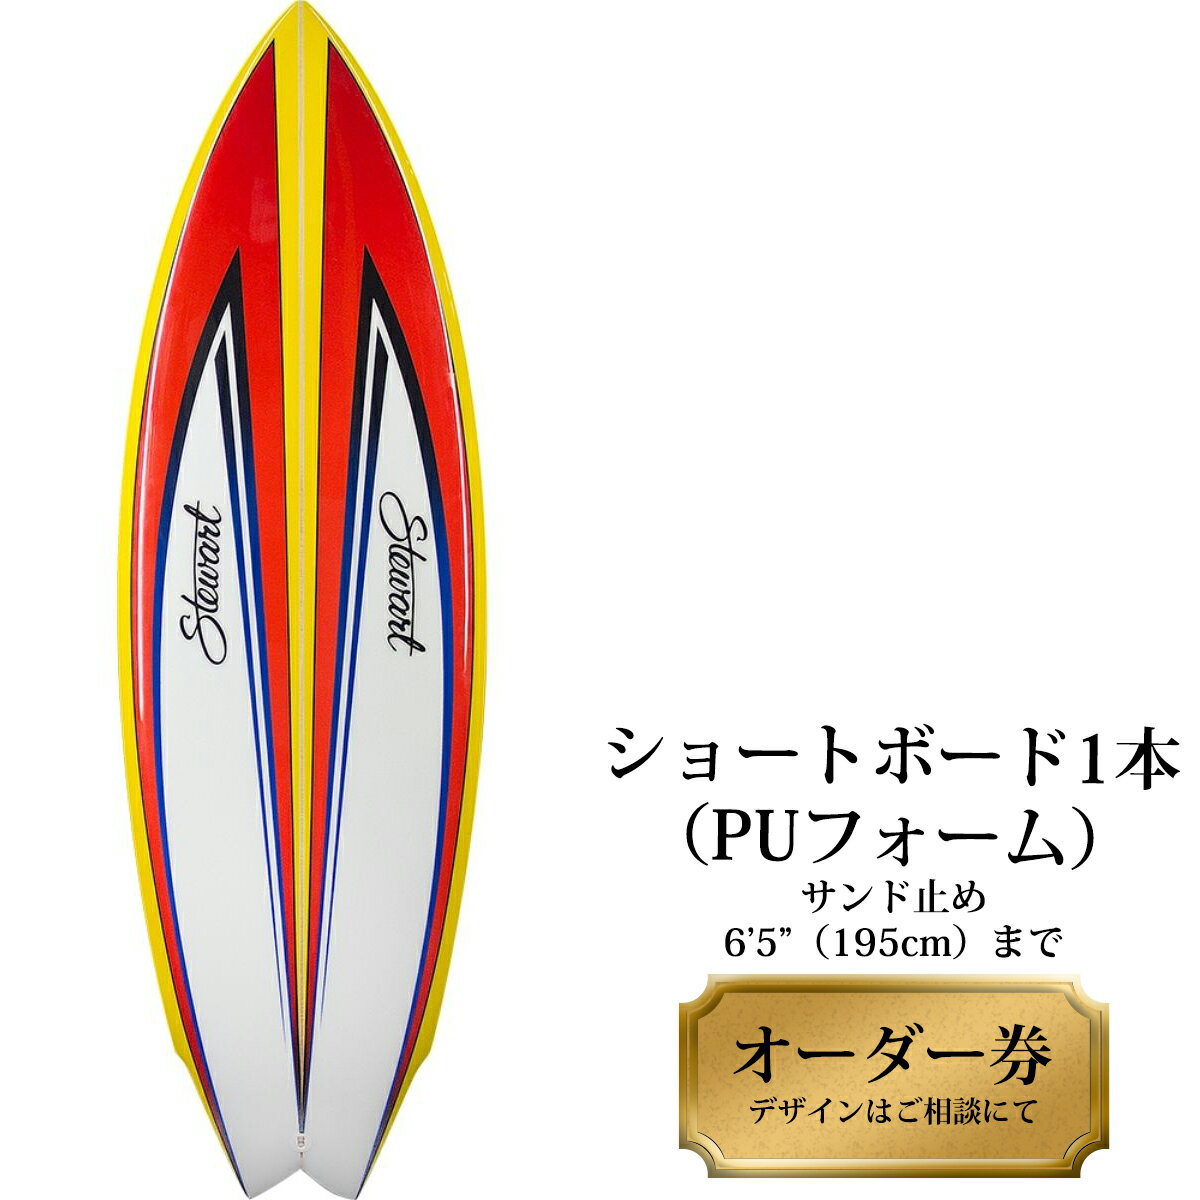 サーフボード ショートボード 1本オーダー券(PUフォーム) サーフィン